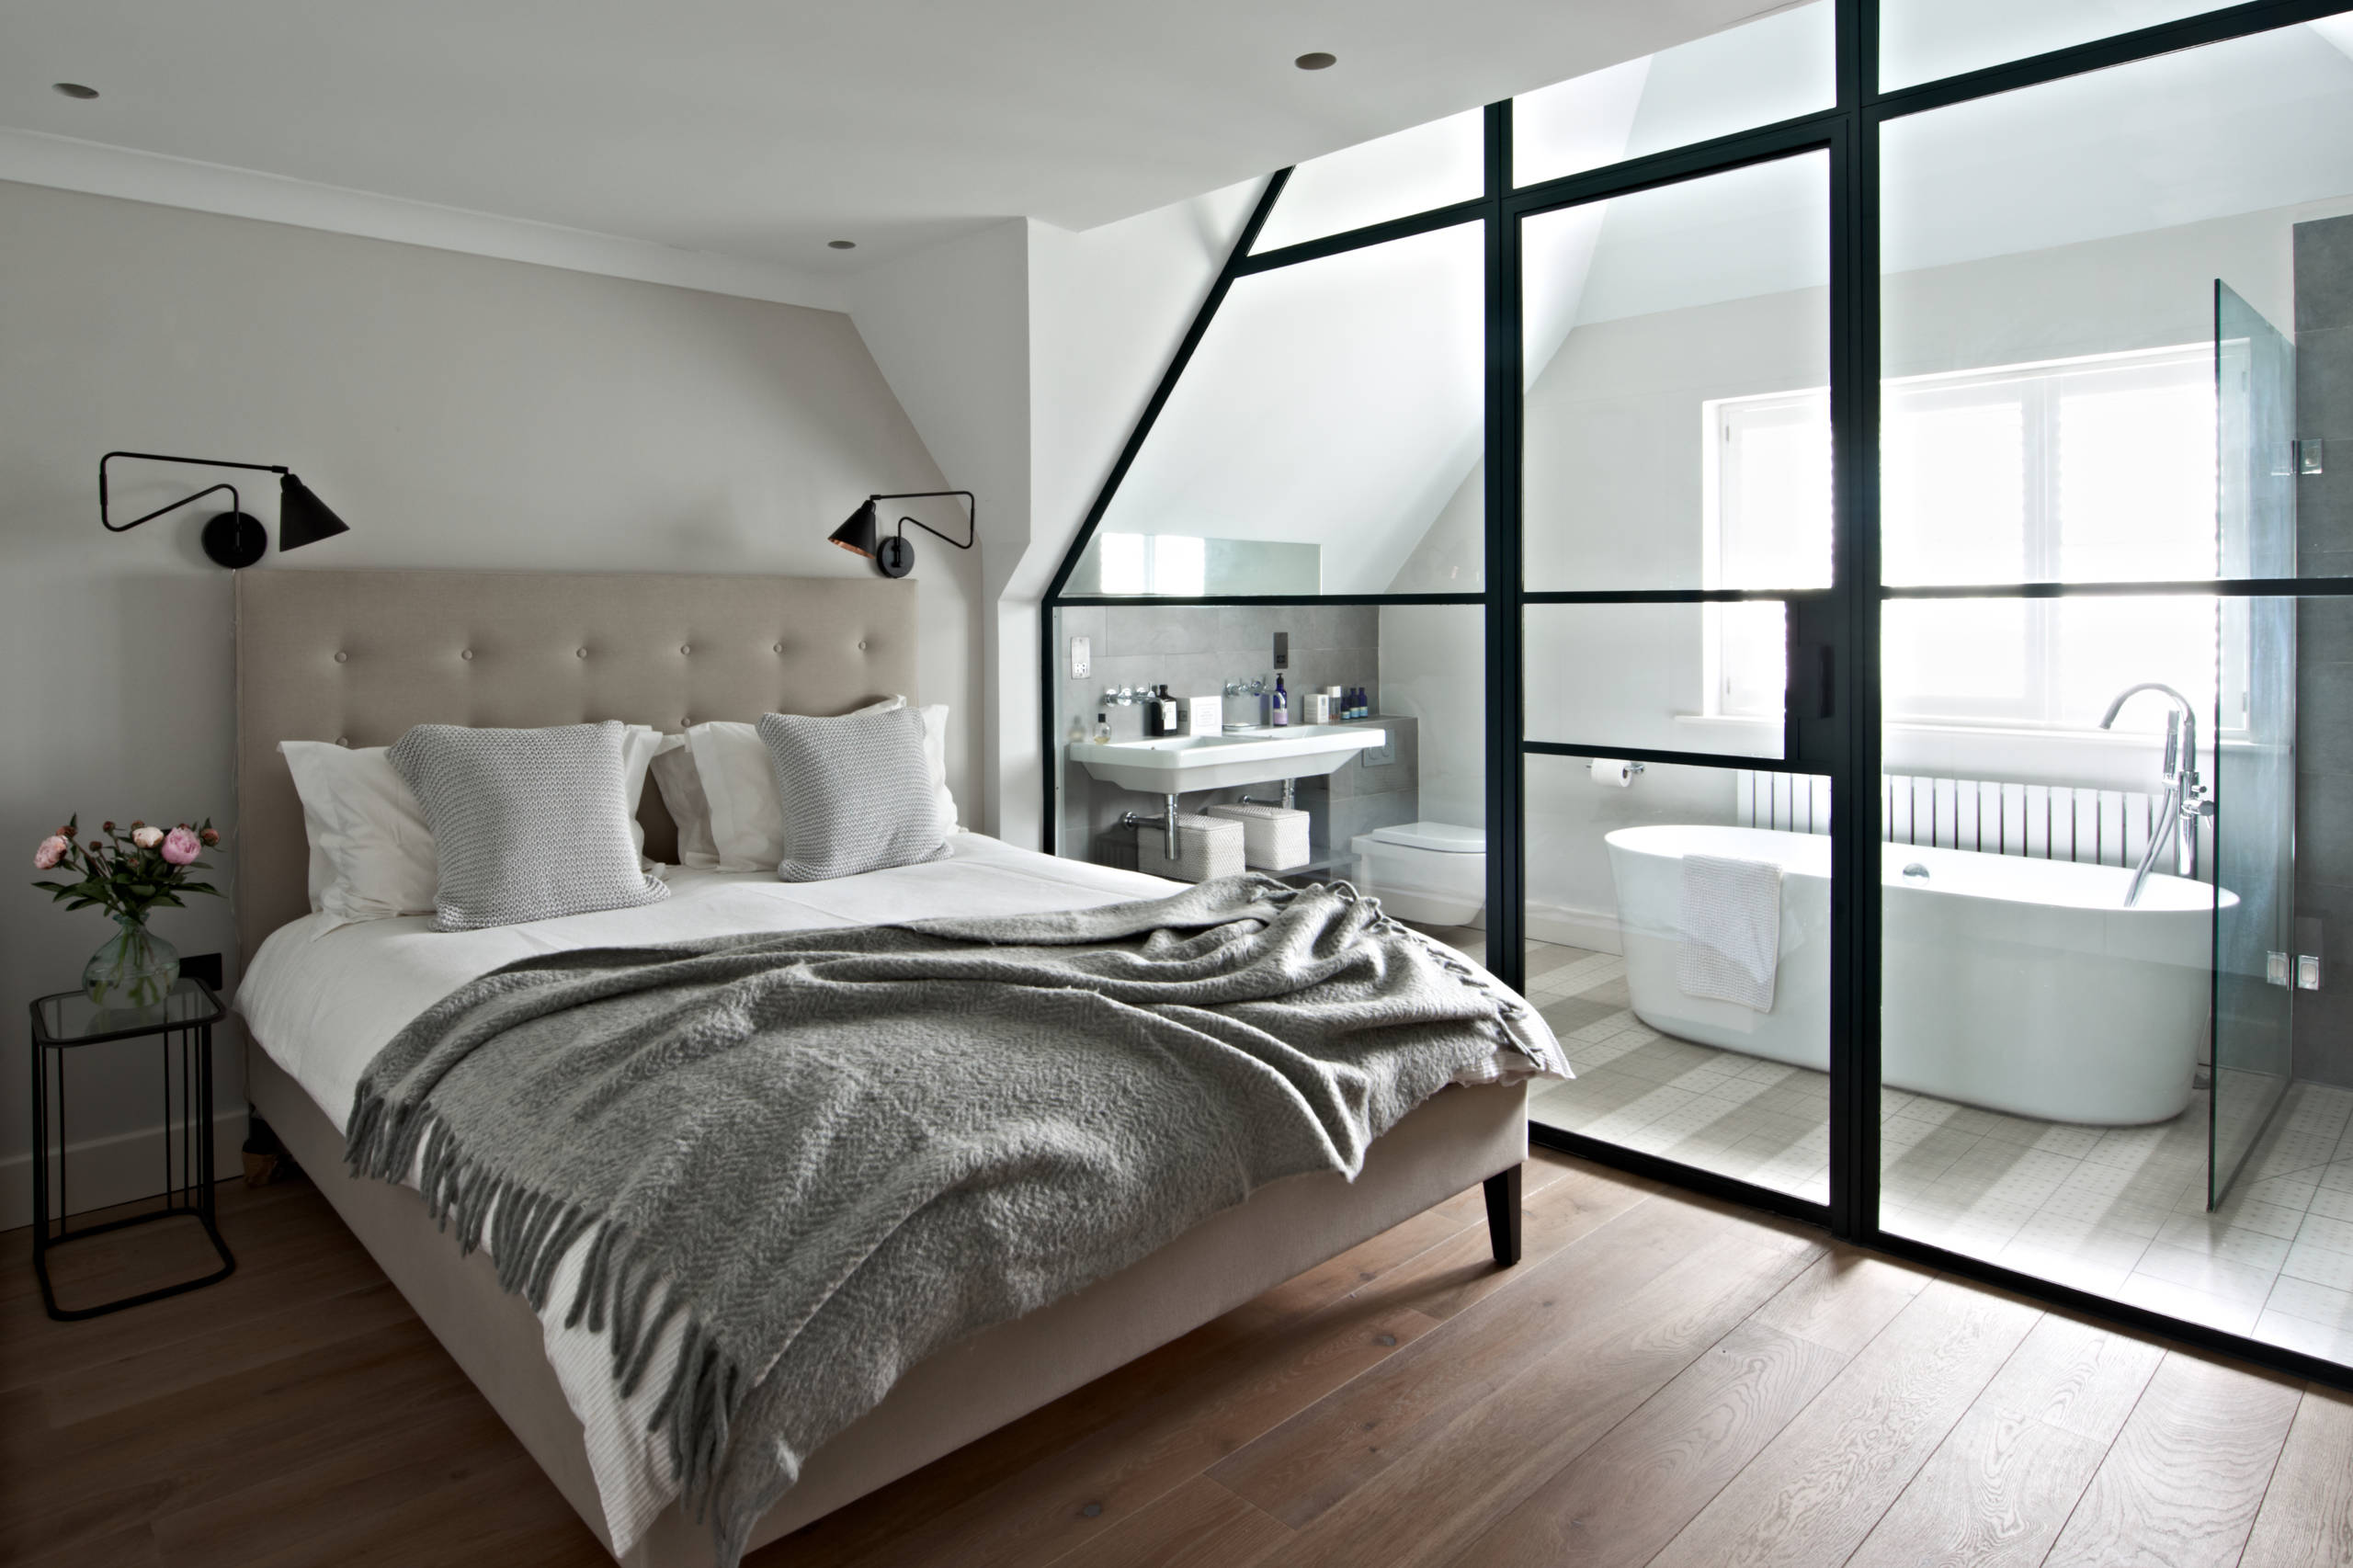 Modern Bedroom Decor Labeled For Reuse